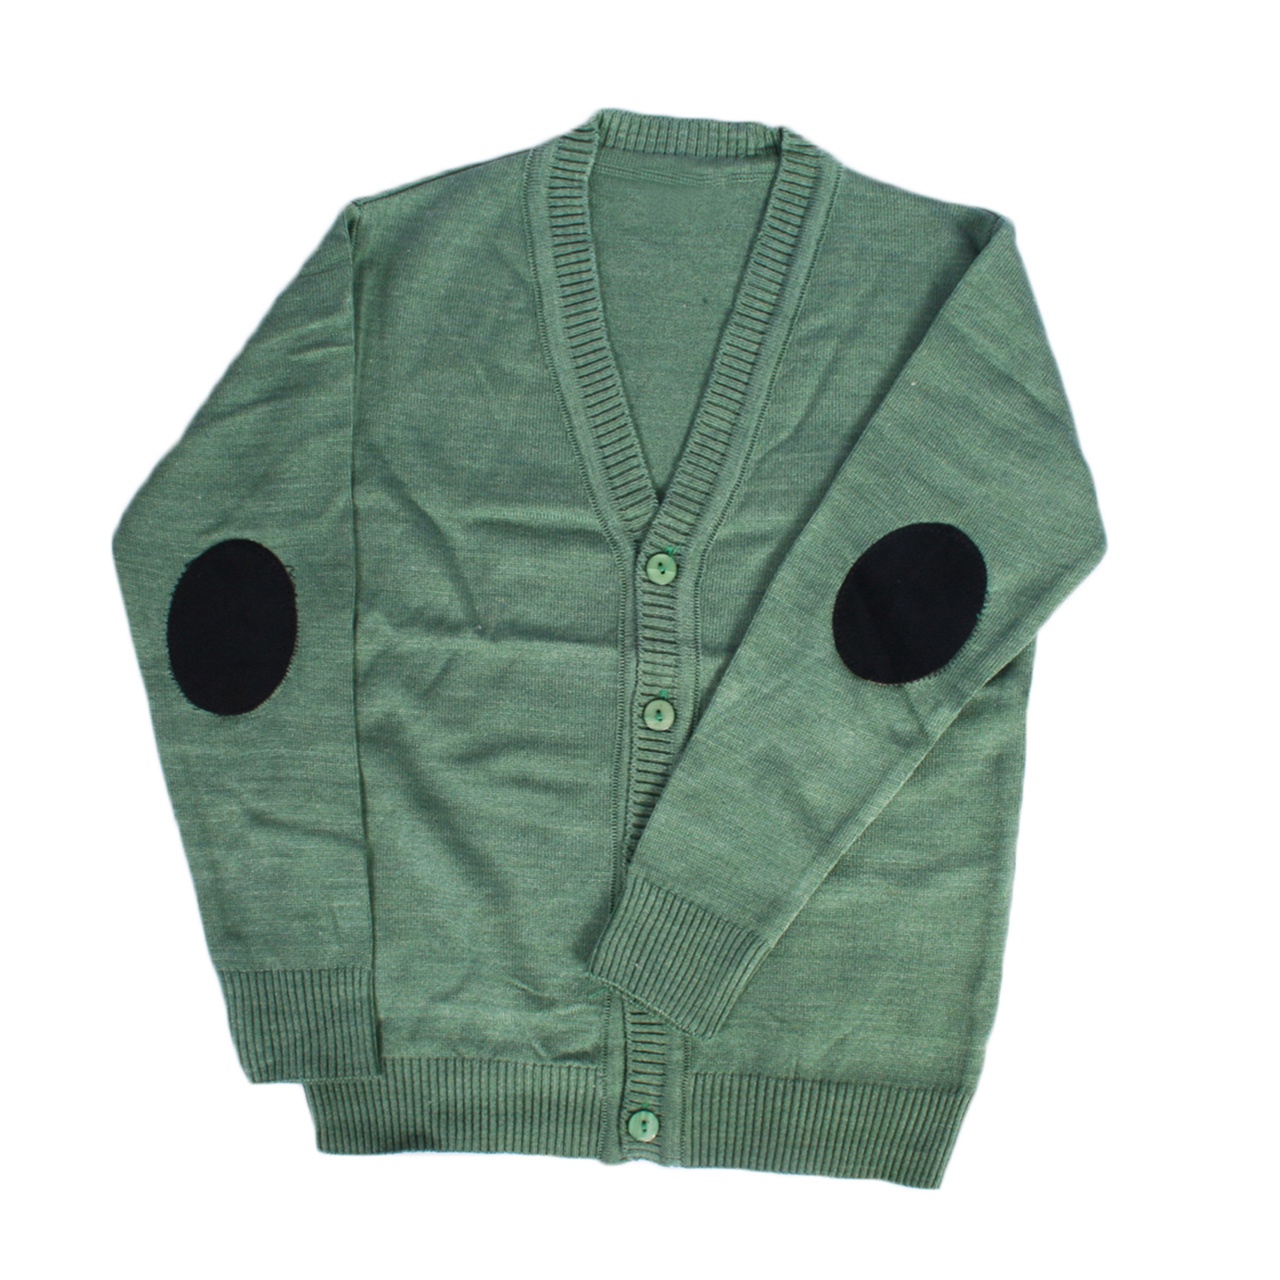 ژاکت پسرانه دکمه دار مدل hasid کد 957913 رنگ سبز روشن